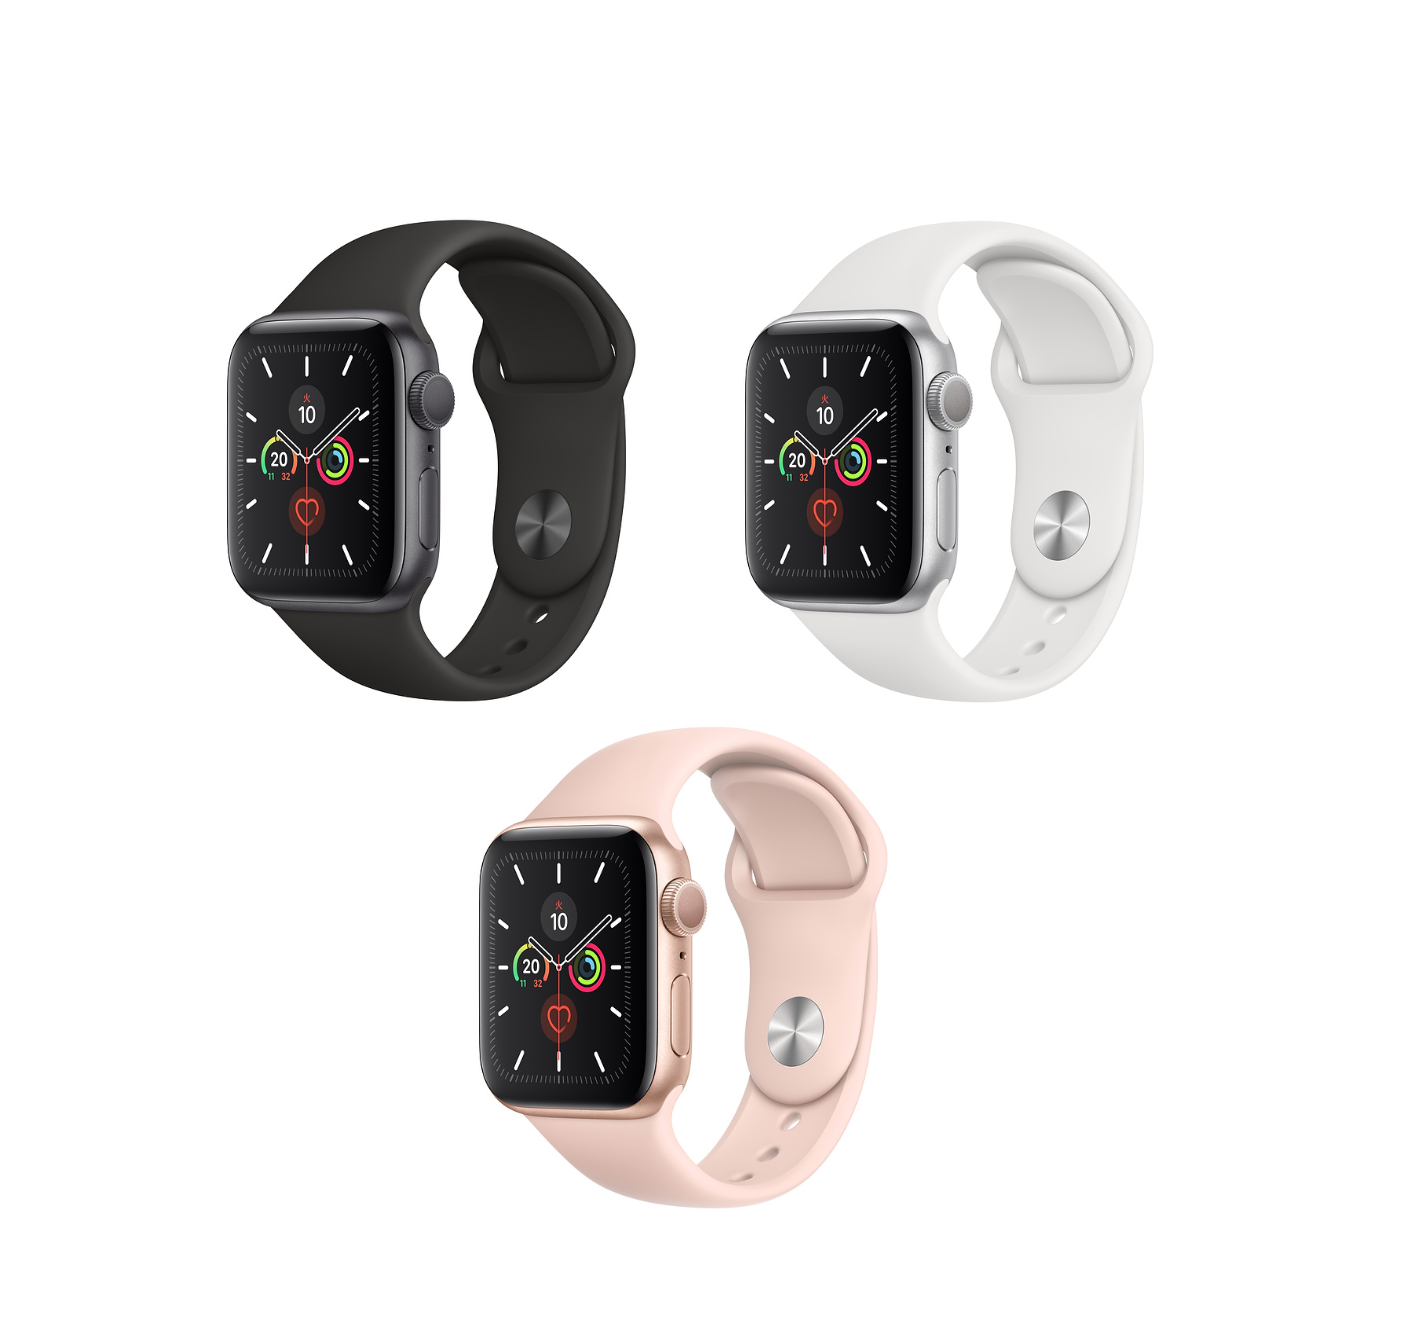 Apple Watchの色選びで悩む 迷うなら男女の人気色の違いを参考に くりふぁ